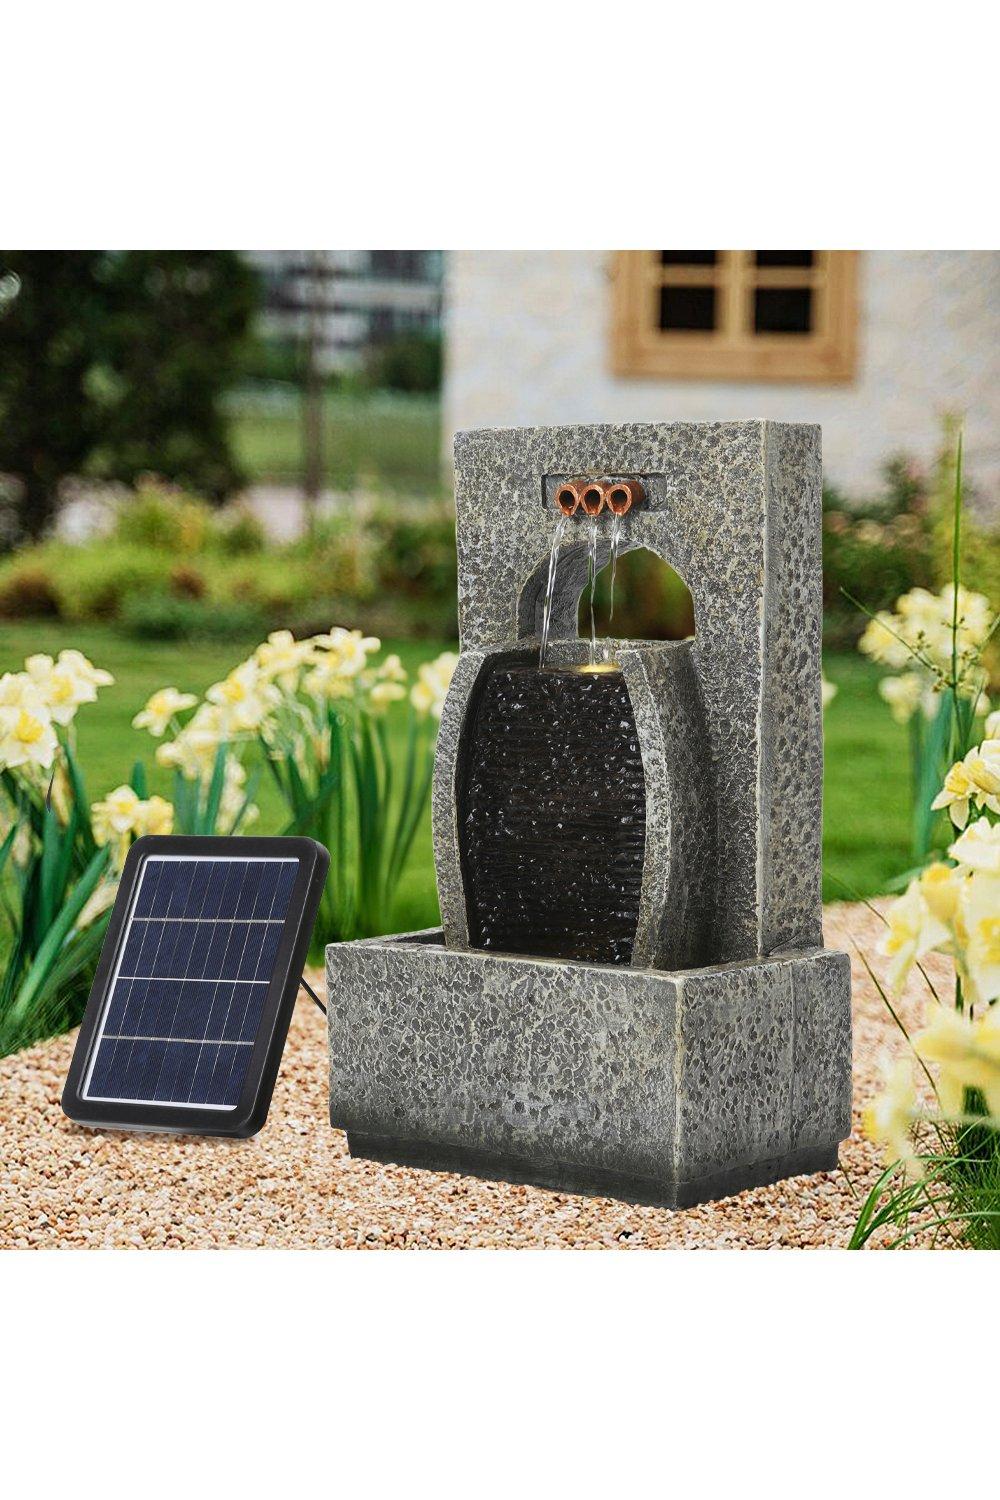 Creative Solar-Powered Outdoor Garden Water Fountain Decor